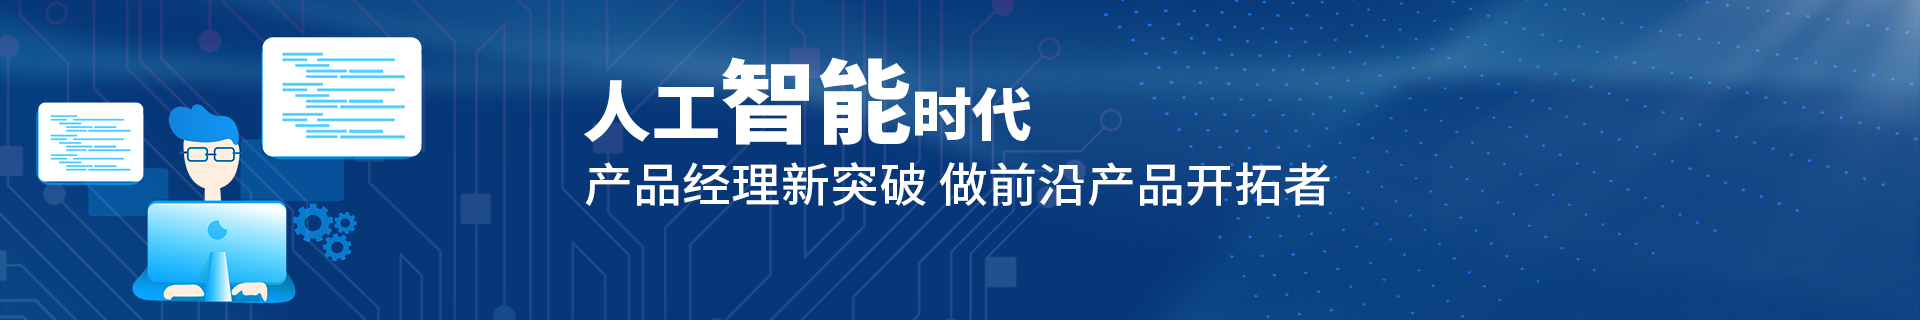 广州海珠区升学就业帮IT培训